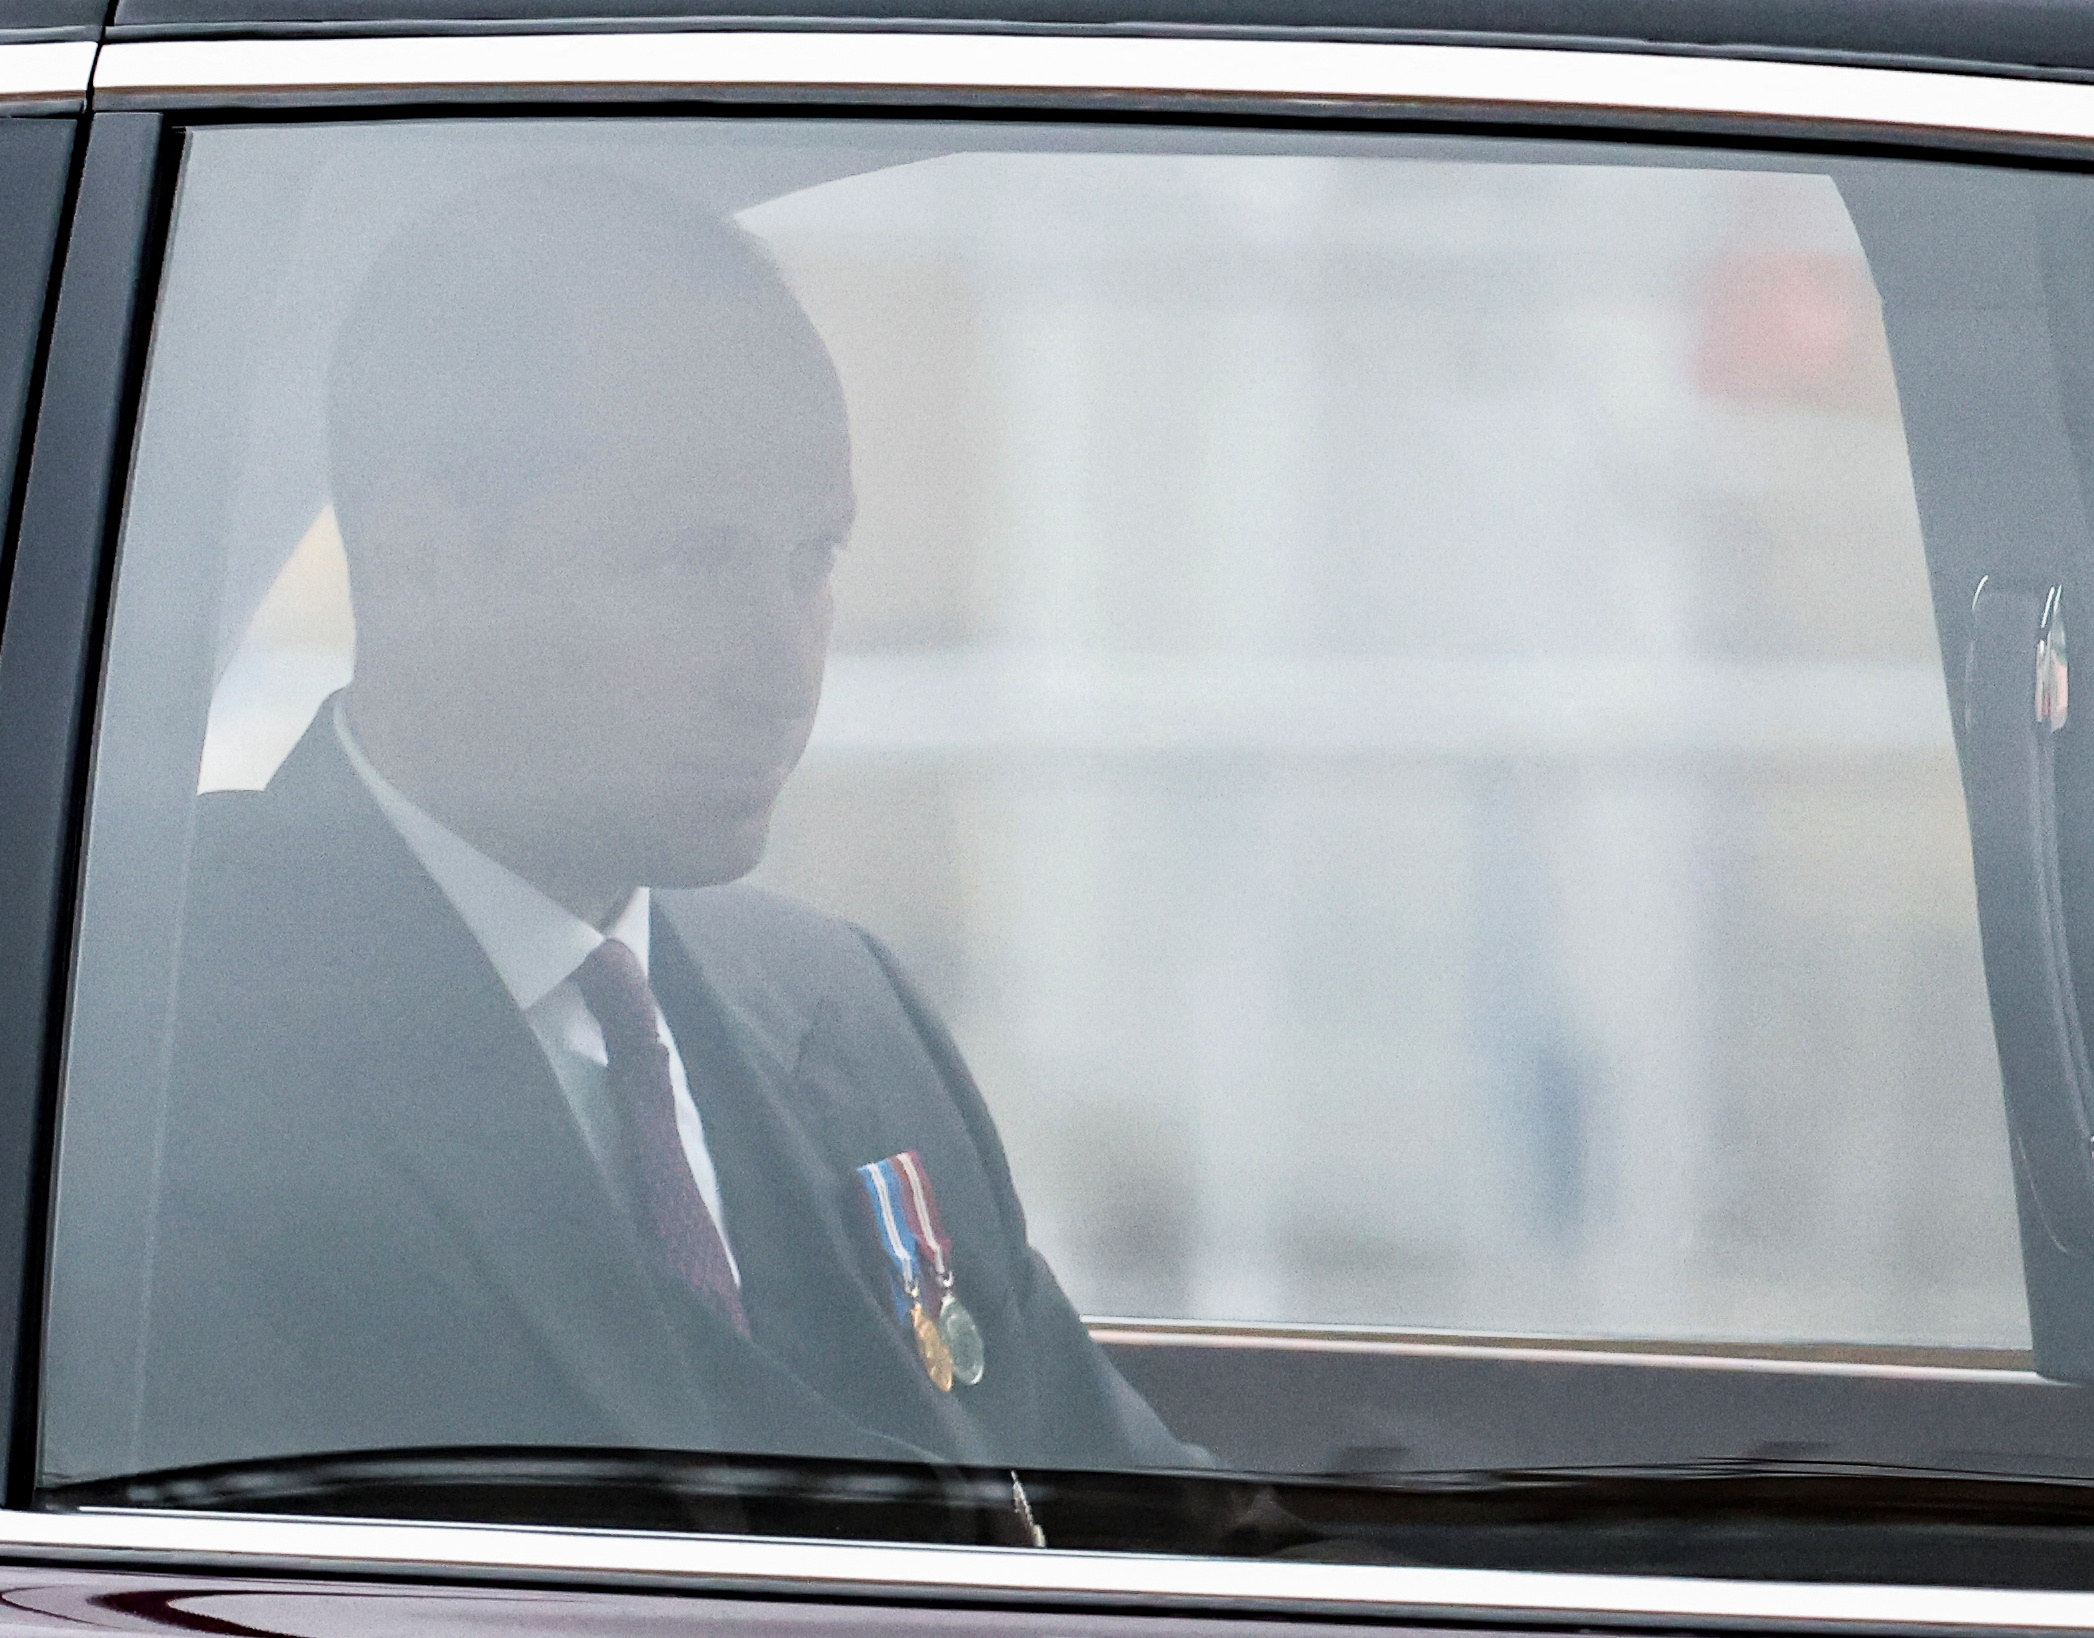 Luego de su conferencia, el primer ministro tendrá una audiencia con el príncipe Carlos, y, a las 18, el nuevo rey encabezará una transmisión oficial (REUTERS)